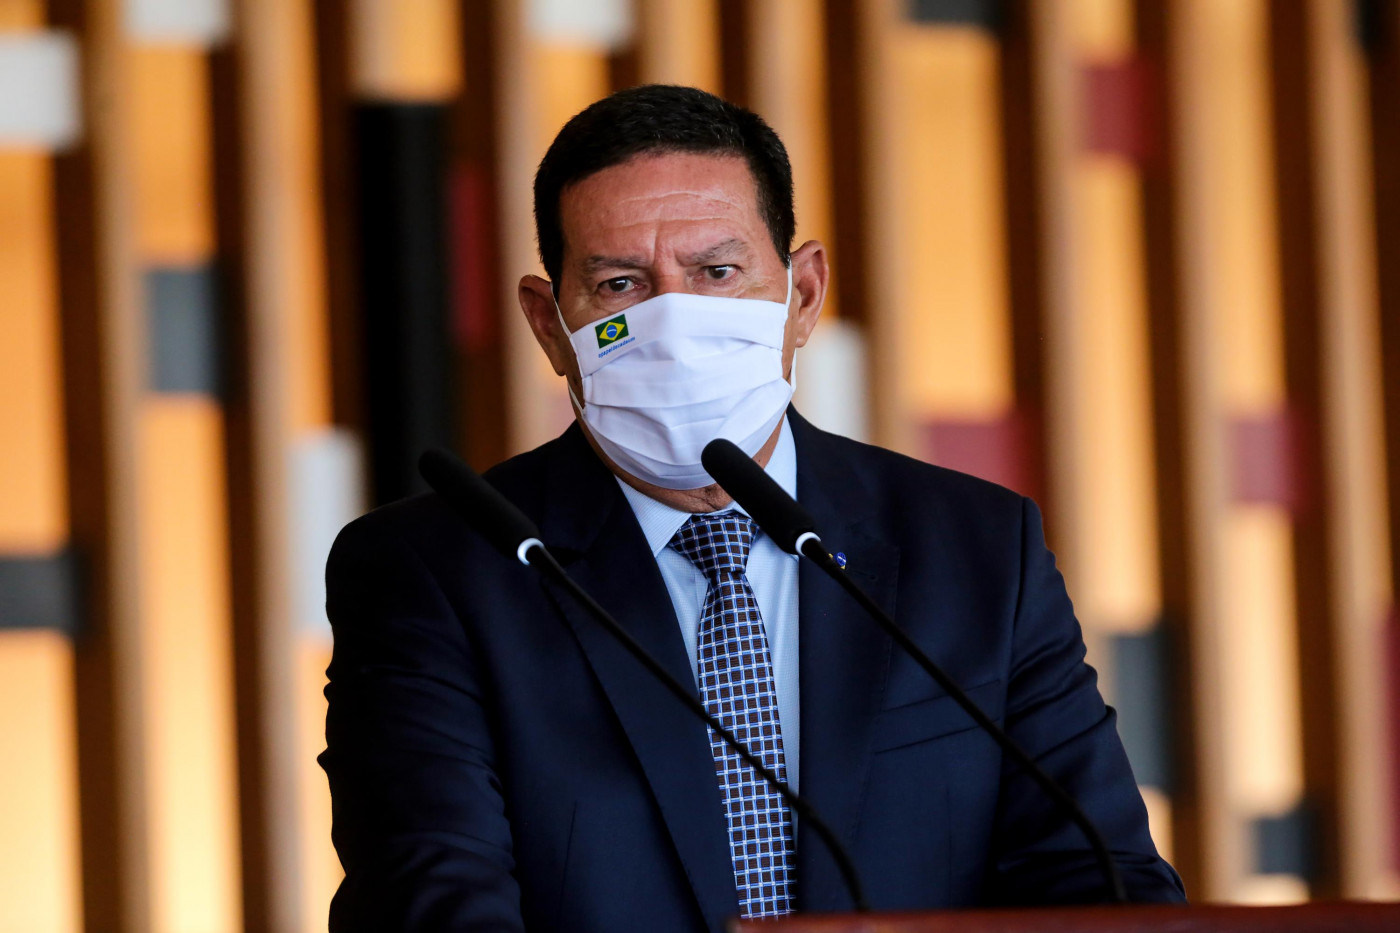 Hamilton Mourão, vice-presidente da República, usa máscara de proteção branca e terno preto durante coletiva do Conselho da Amazônia